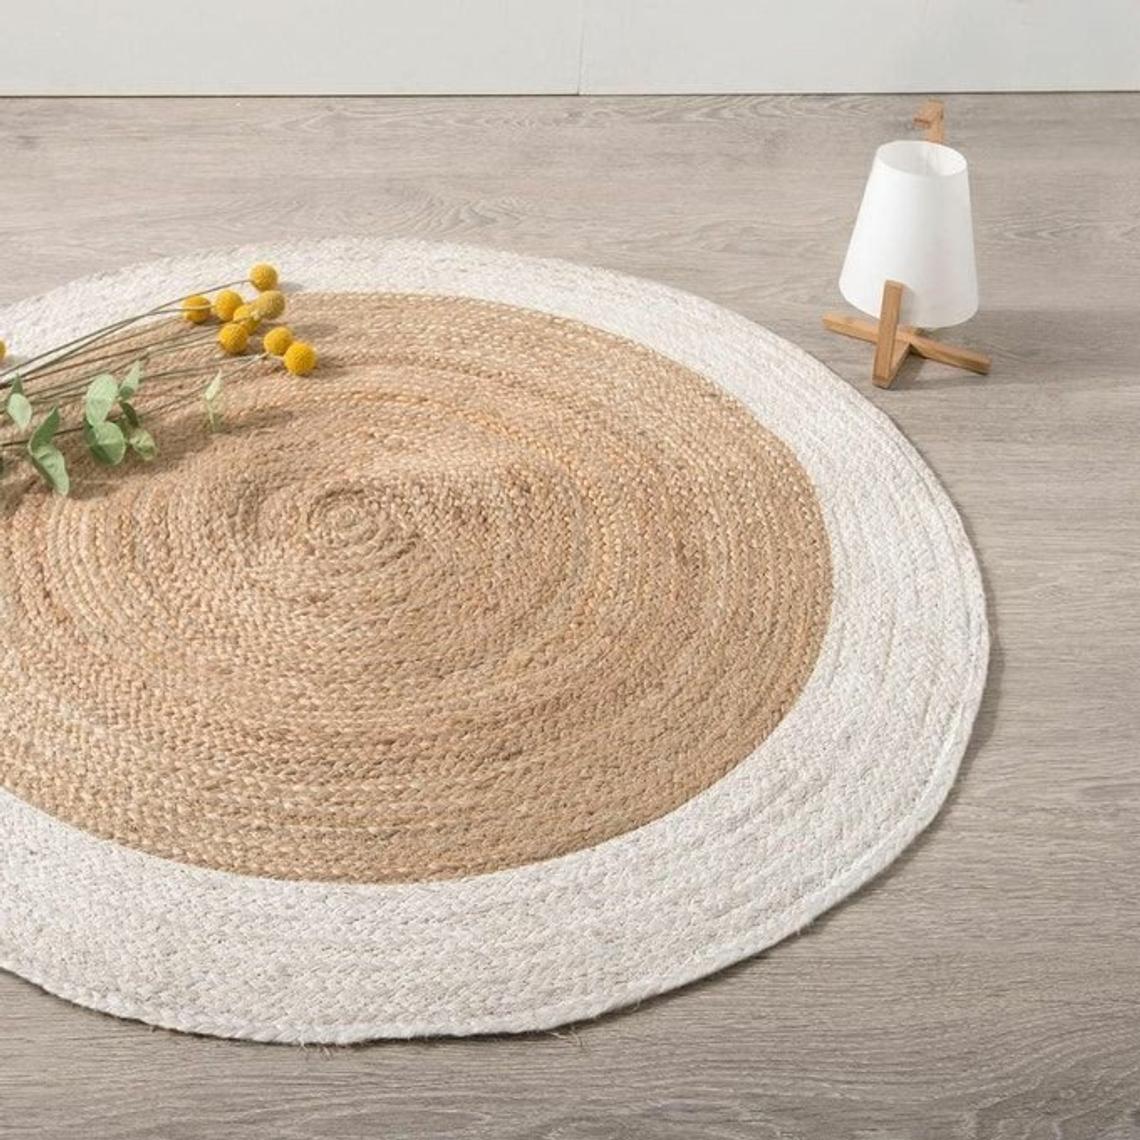 Rug 100% natural jute handmade reversible modern living area carpet runner rugs 